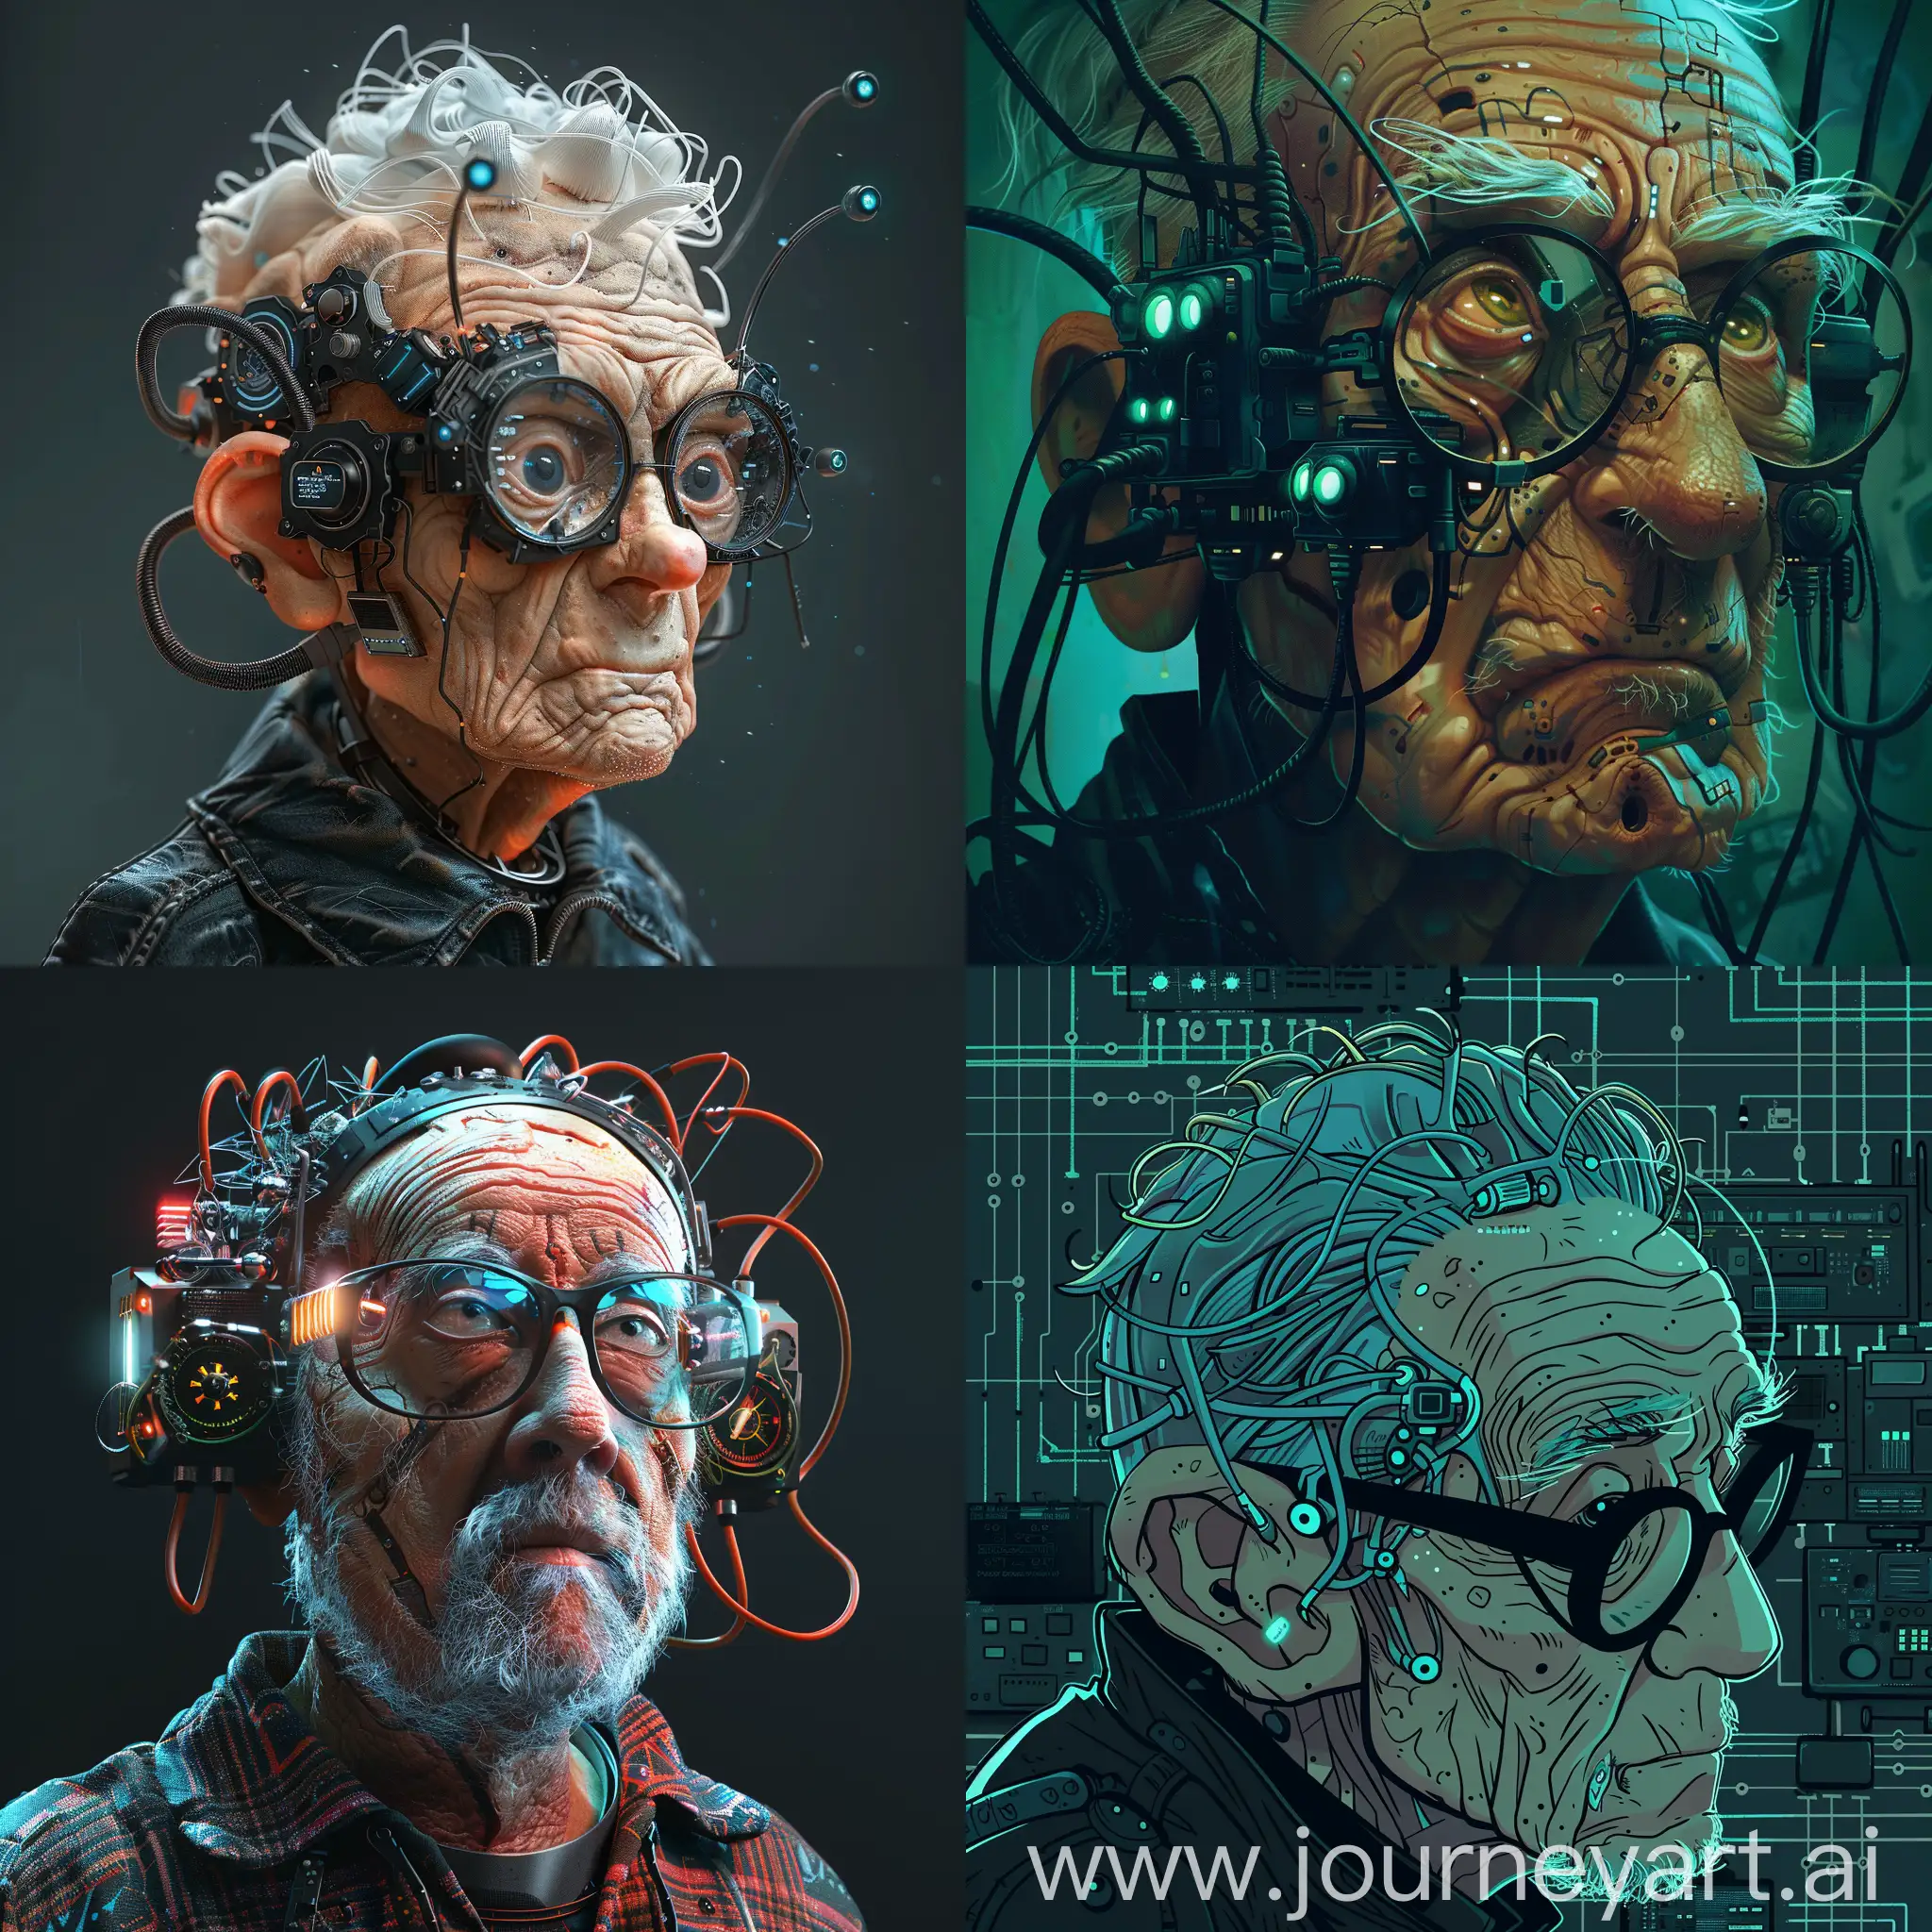 Futuristic-Cyberpunk-Grandpa-with-a-Massive-Cyberbrain